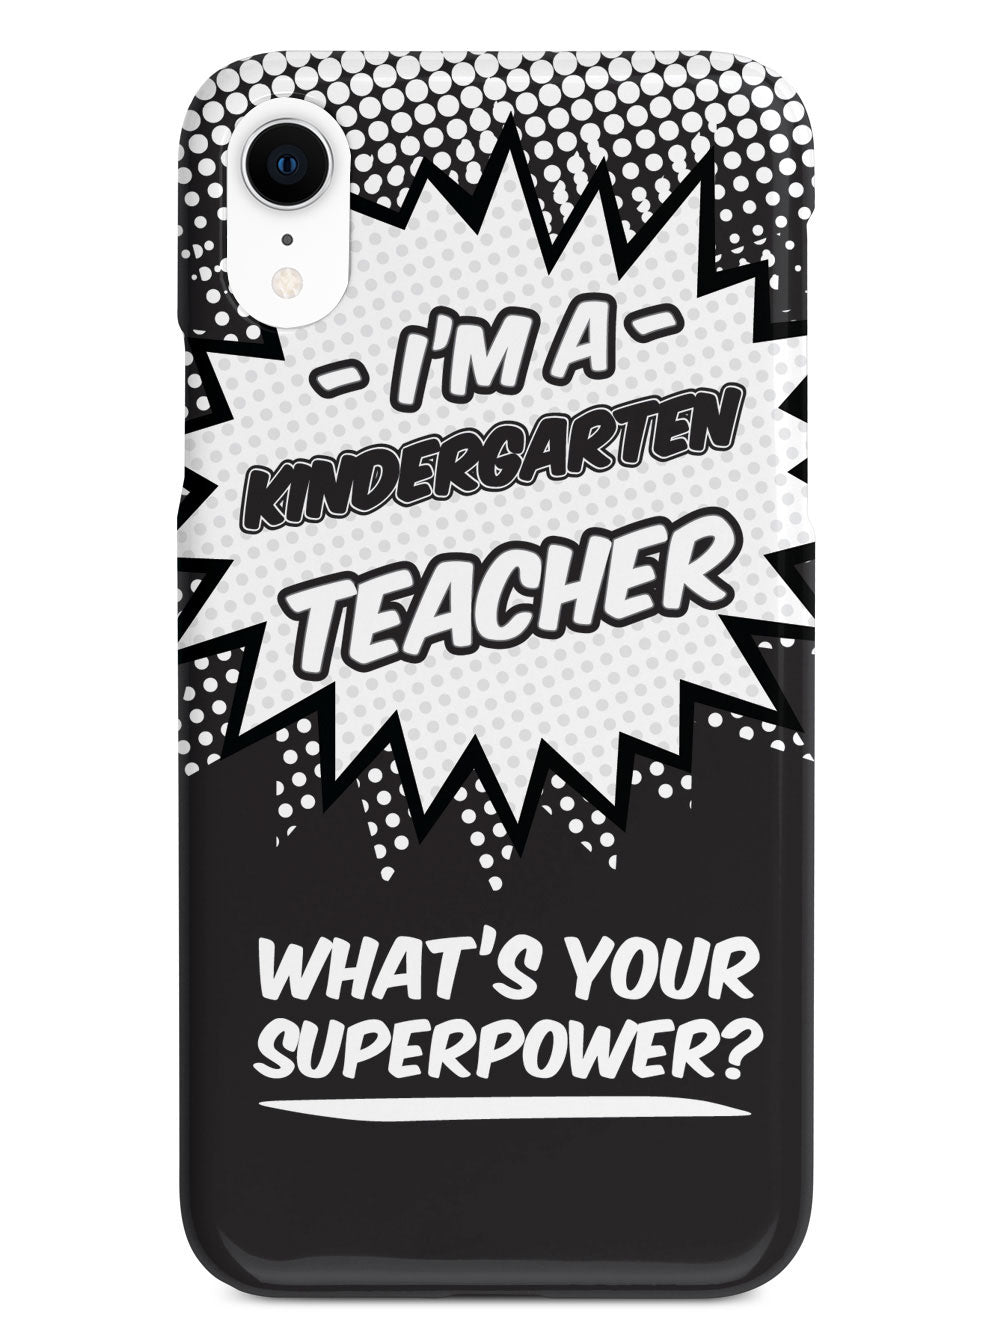 Kindergarten Teacher - What's Your Superpower? Case